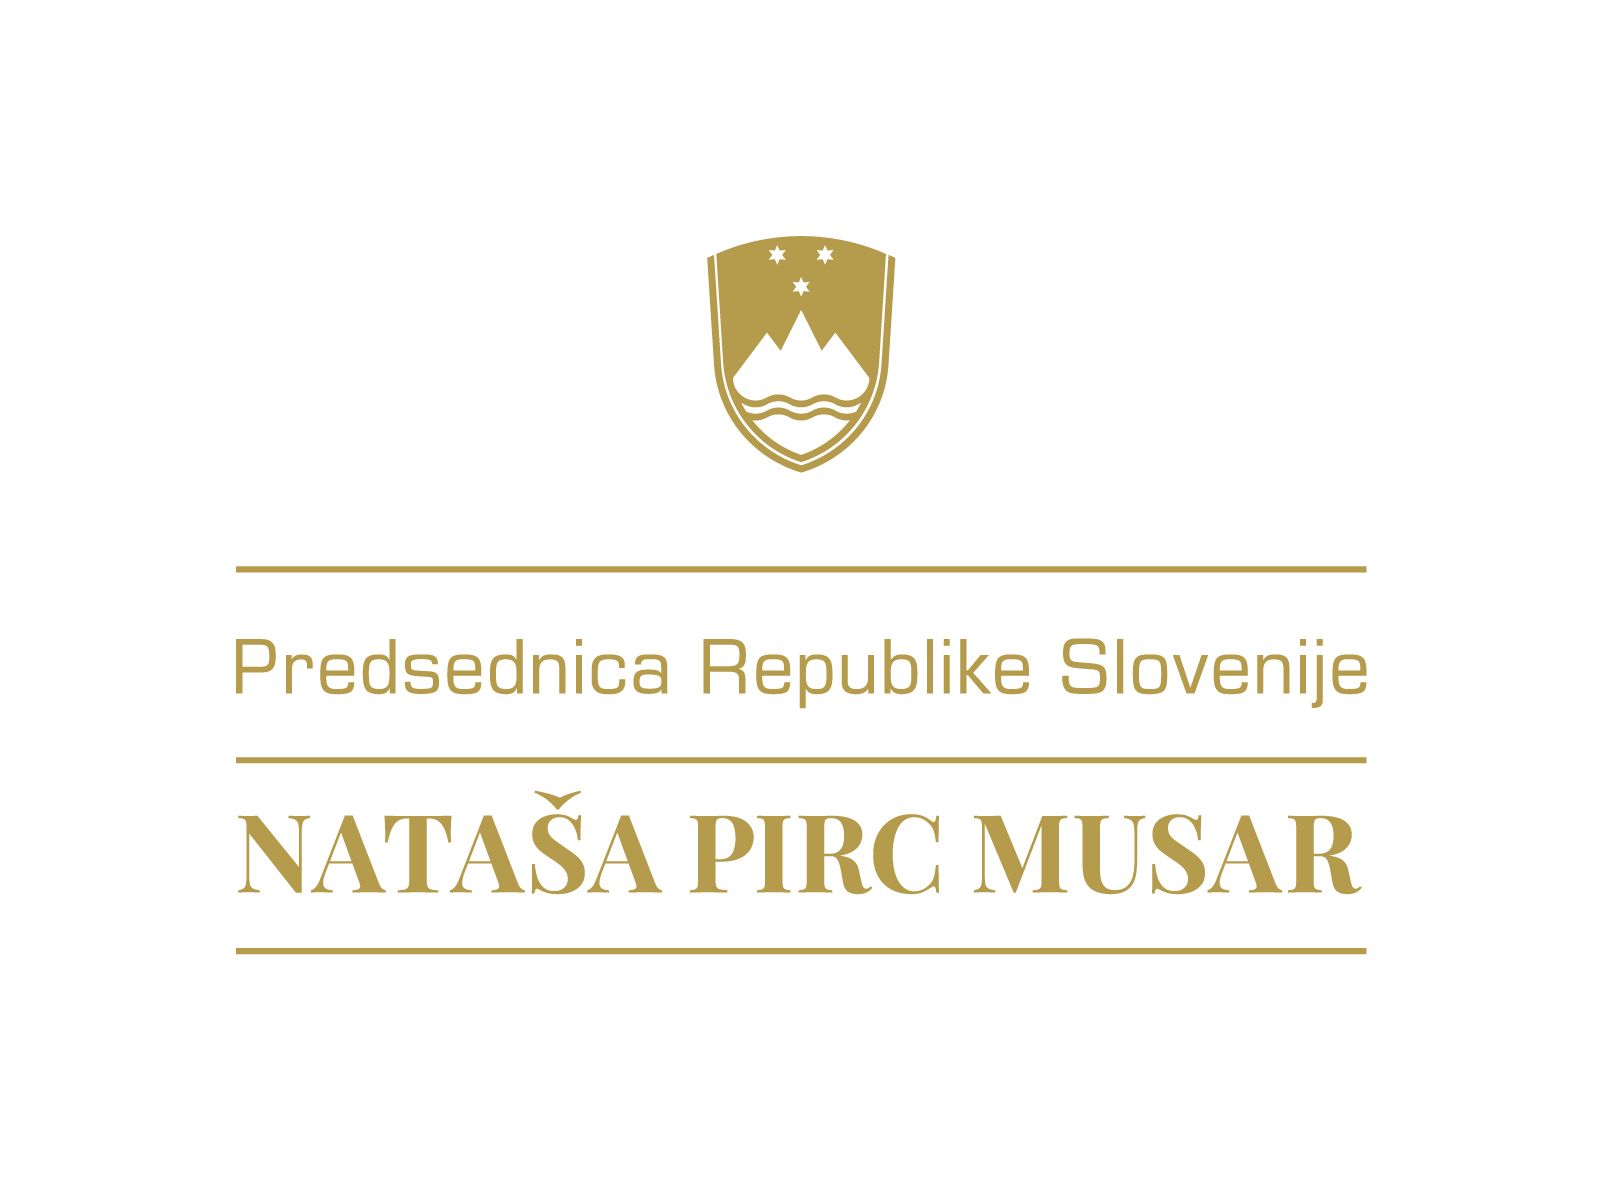 Dogodek poteka pod častnim pokroviteljstvom predsednice Republike Slovenije dr. Nataše Pirc Musar. 